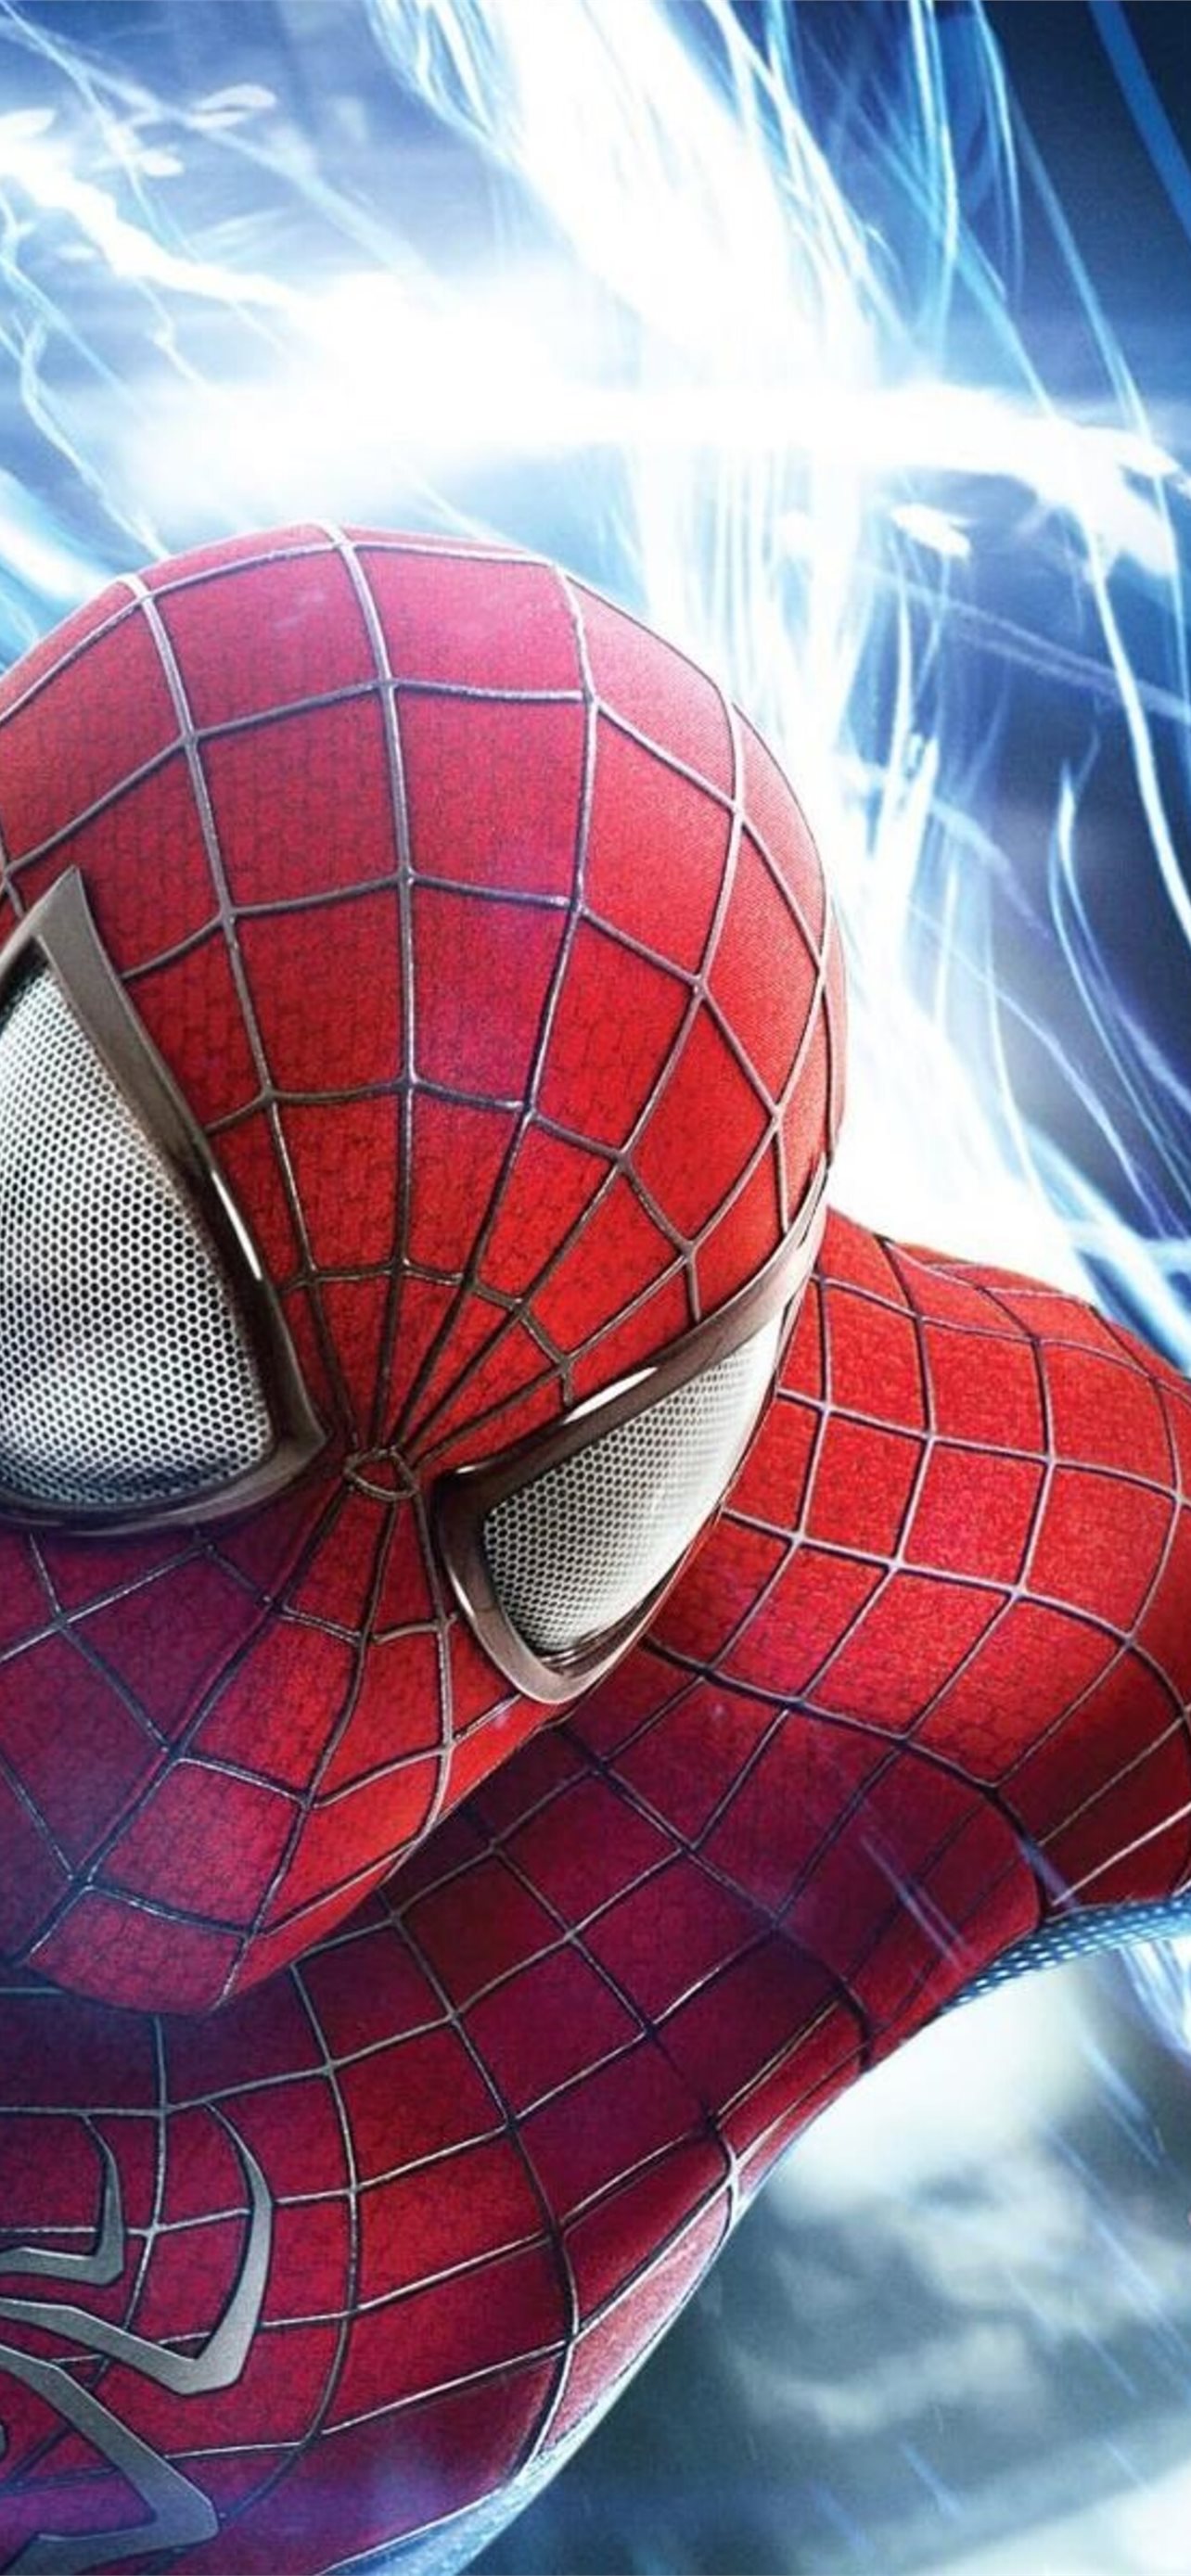 Hành trình của Spider-Man đem lại cảm giác mạnh mẽ và bất ngờ cho người xem. Với khả năng leo trèo, phóng nhảy và bắn súng độc đáo, nhân vật này sẽ đưa bạn vào thế giới siêu anh hùng đầy thú vị.